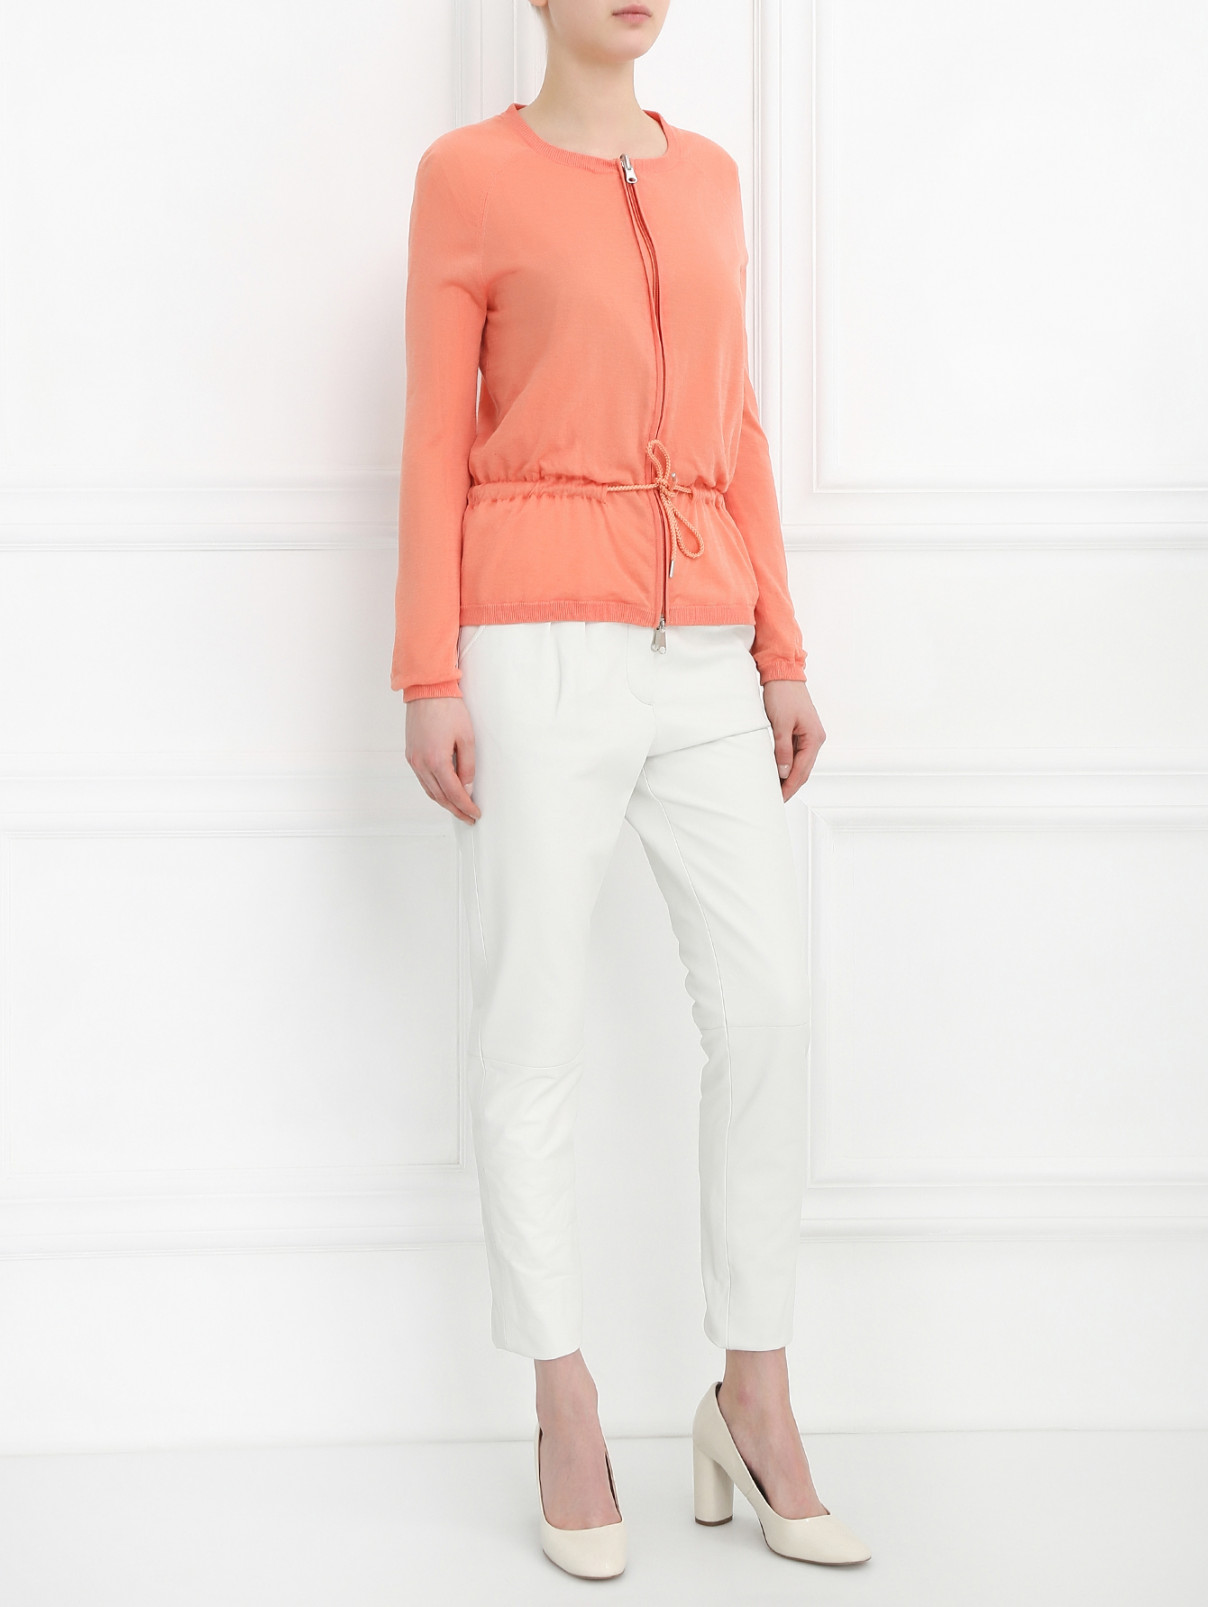 Узкие брюки из кожи Jean Paul Gaultier  –  Модель Общий вид  – Цвет:  Белый